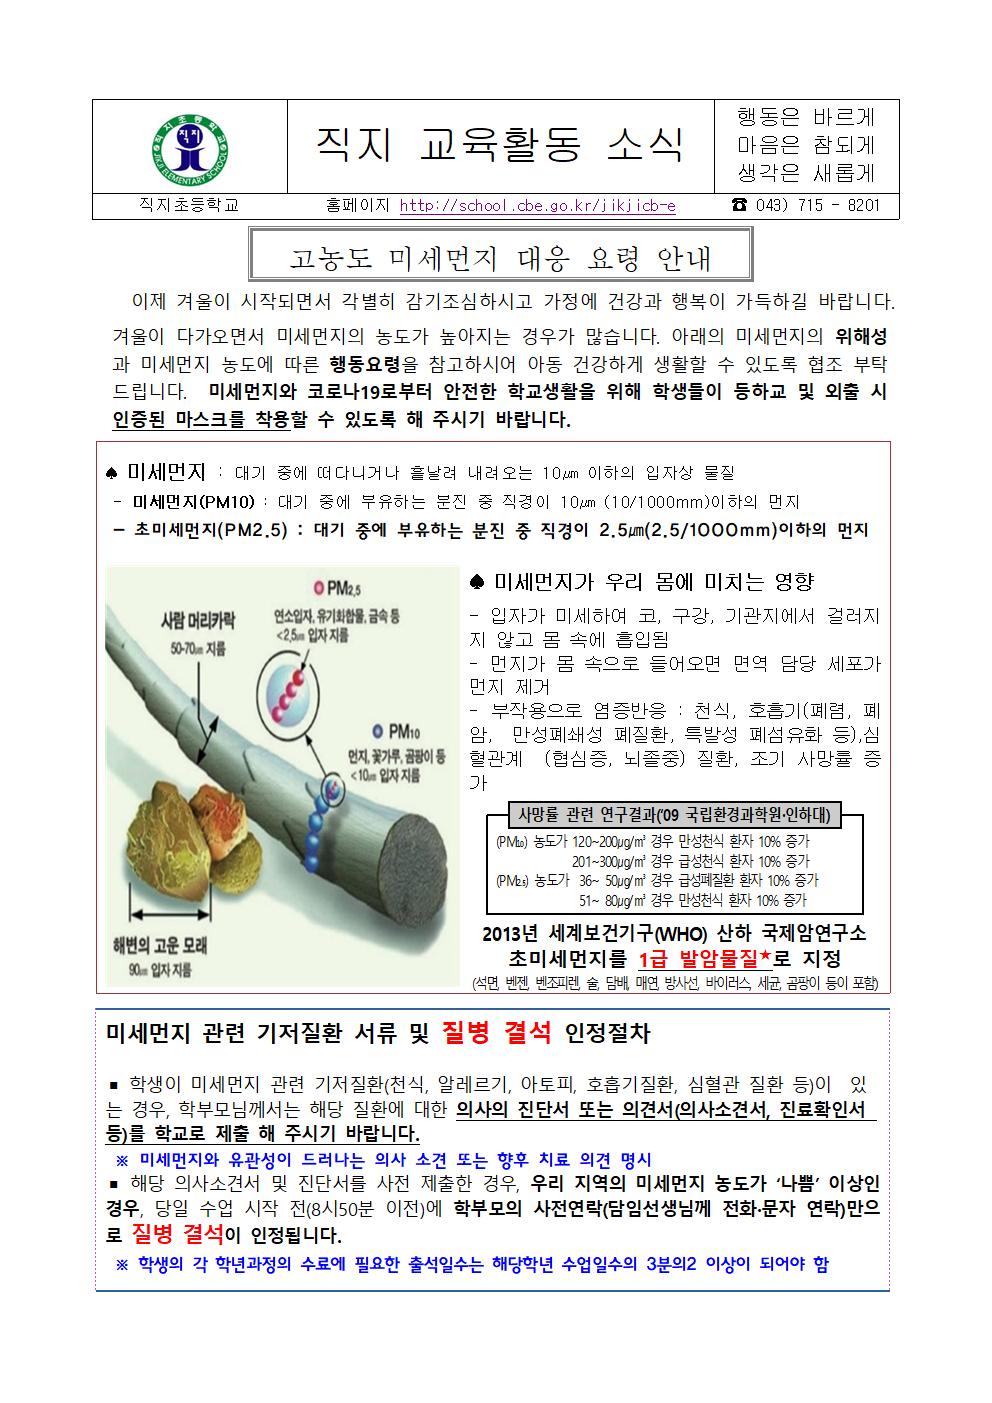 고농도 미세먼지 대응요령 가정통신문(직지초_hwp001